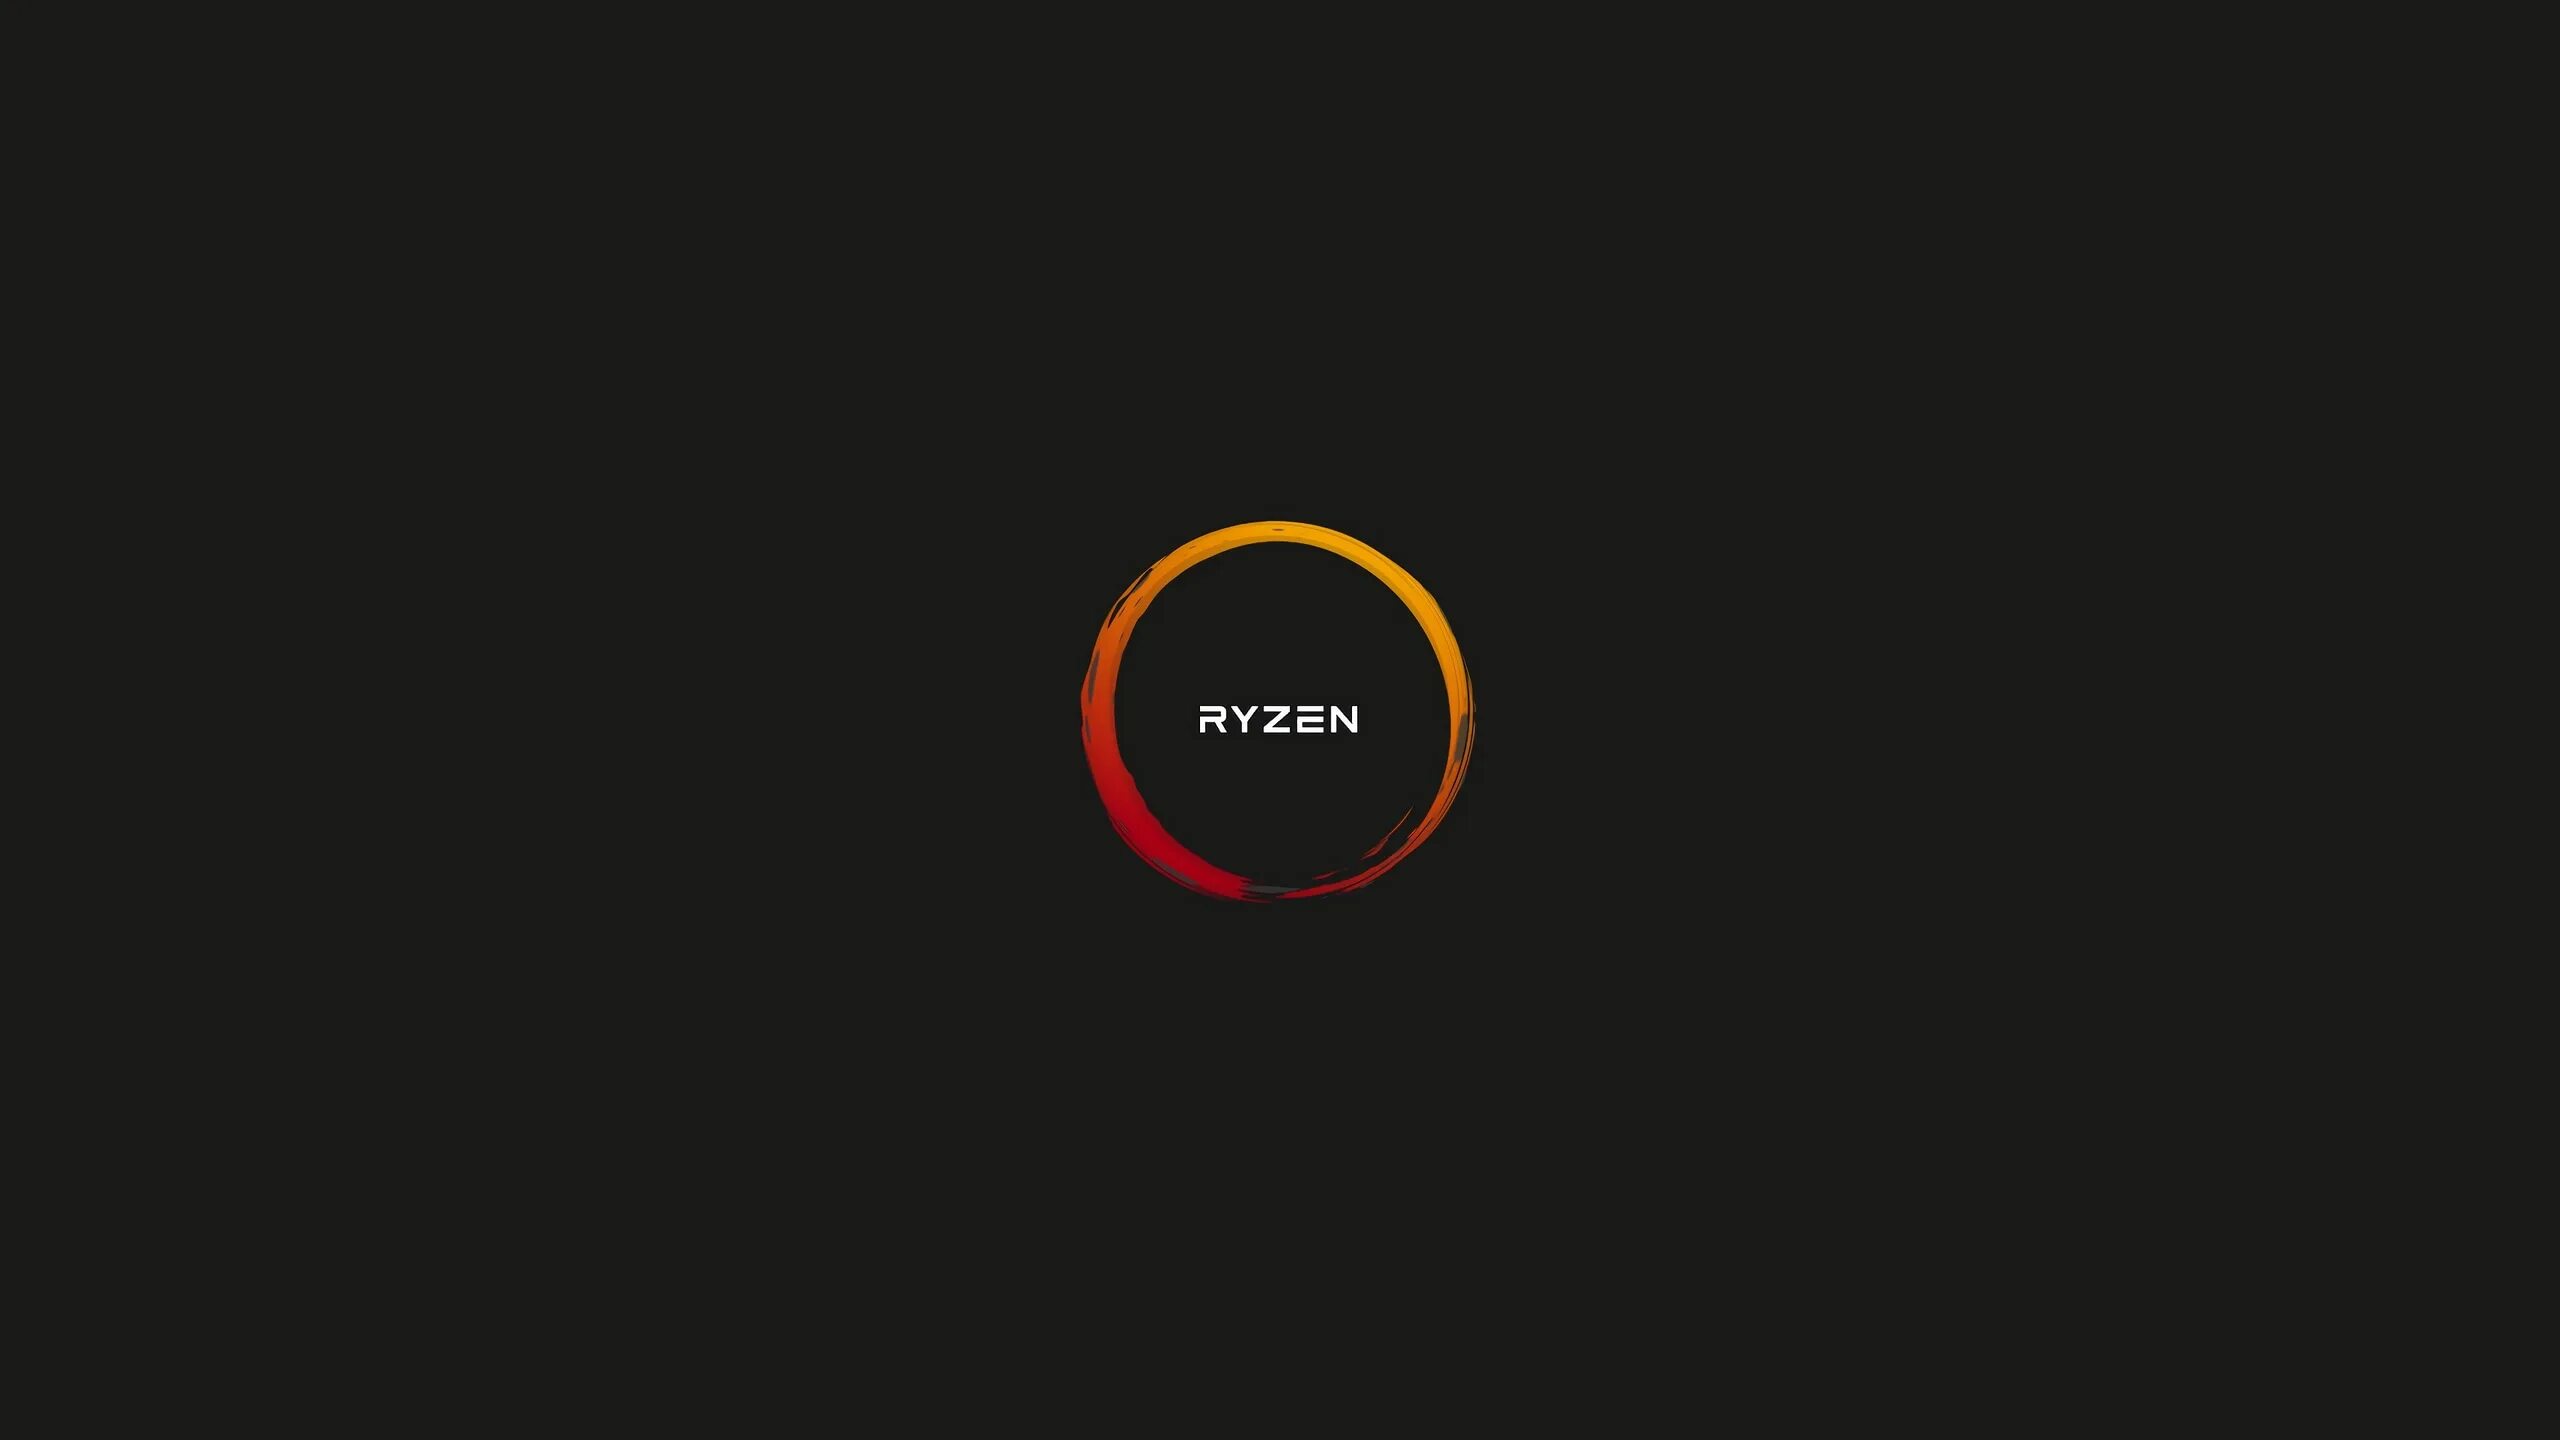 Ryzen 1920x1080. Обои Ryzen. AMD обои. Ryzen Wallpaper 4k. Ryzen логотип PNG.